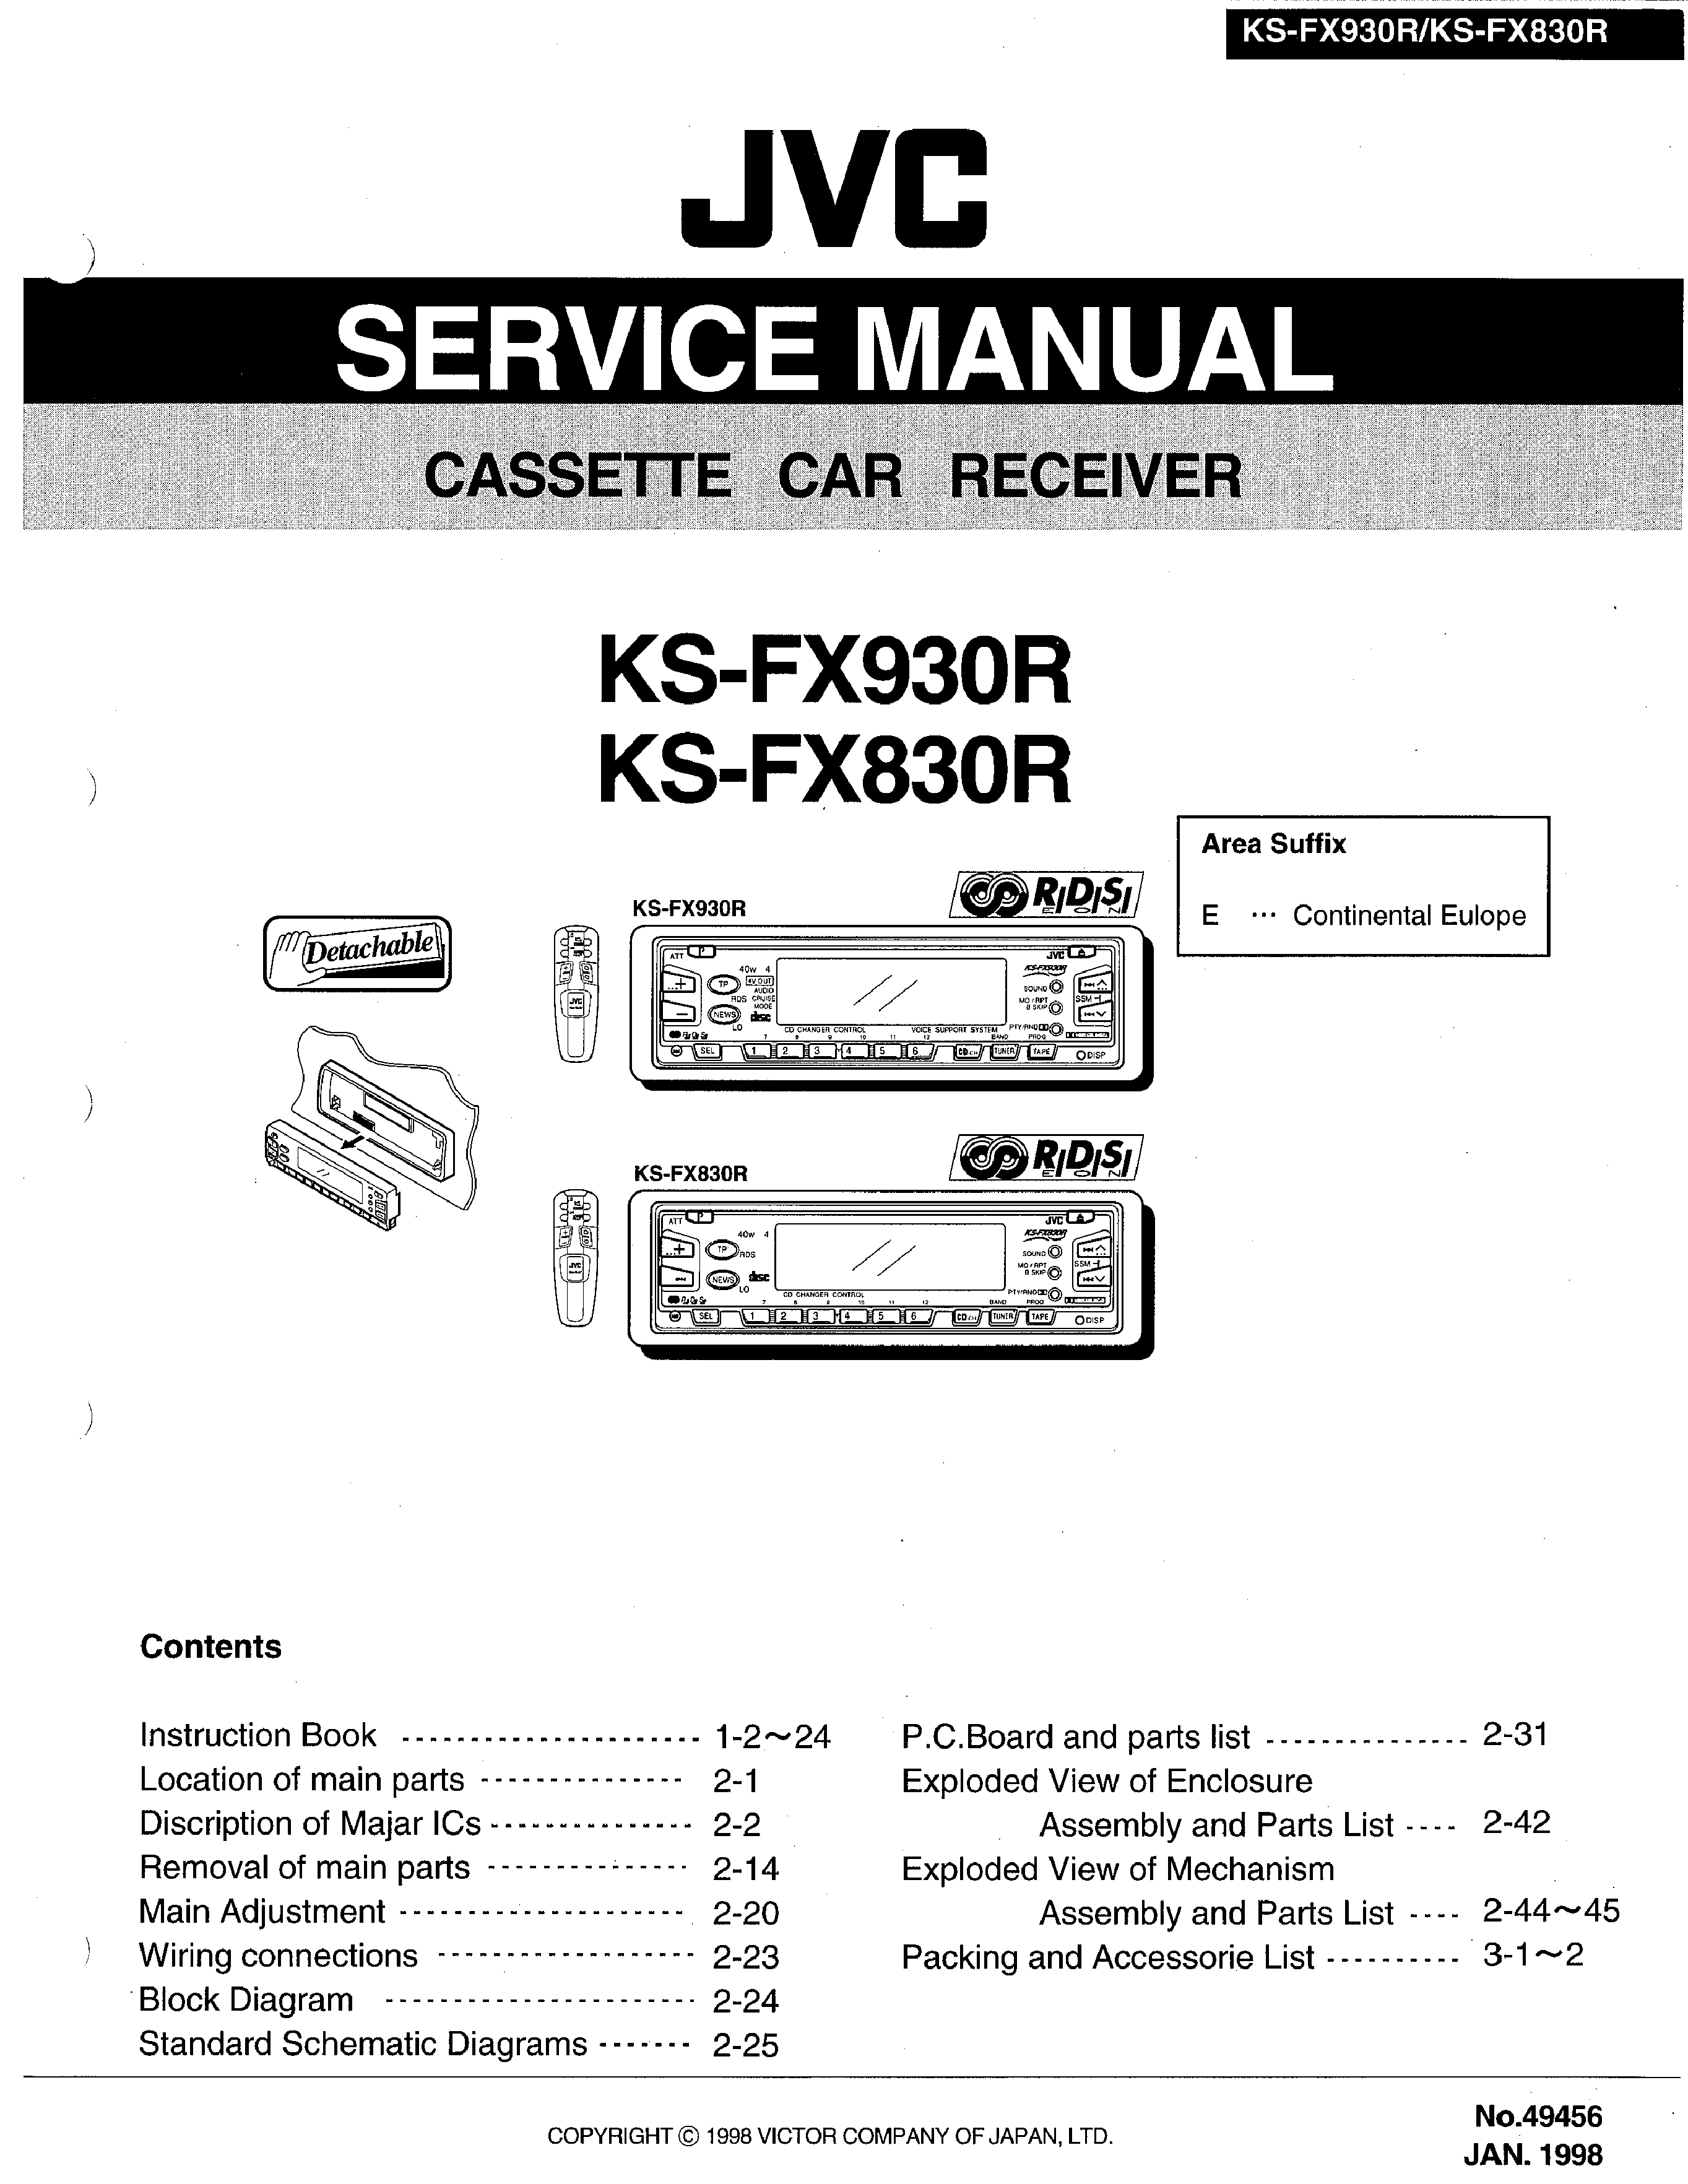 Jvc Sxxsw6000 Manual